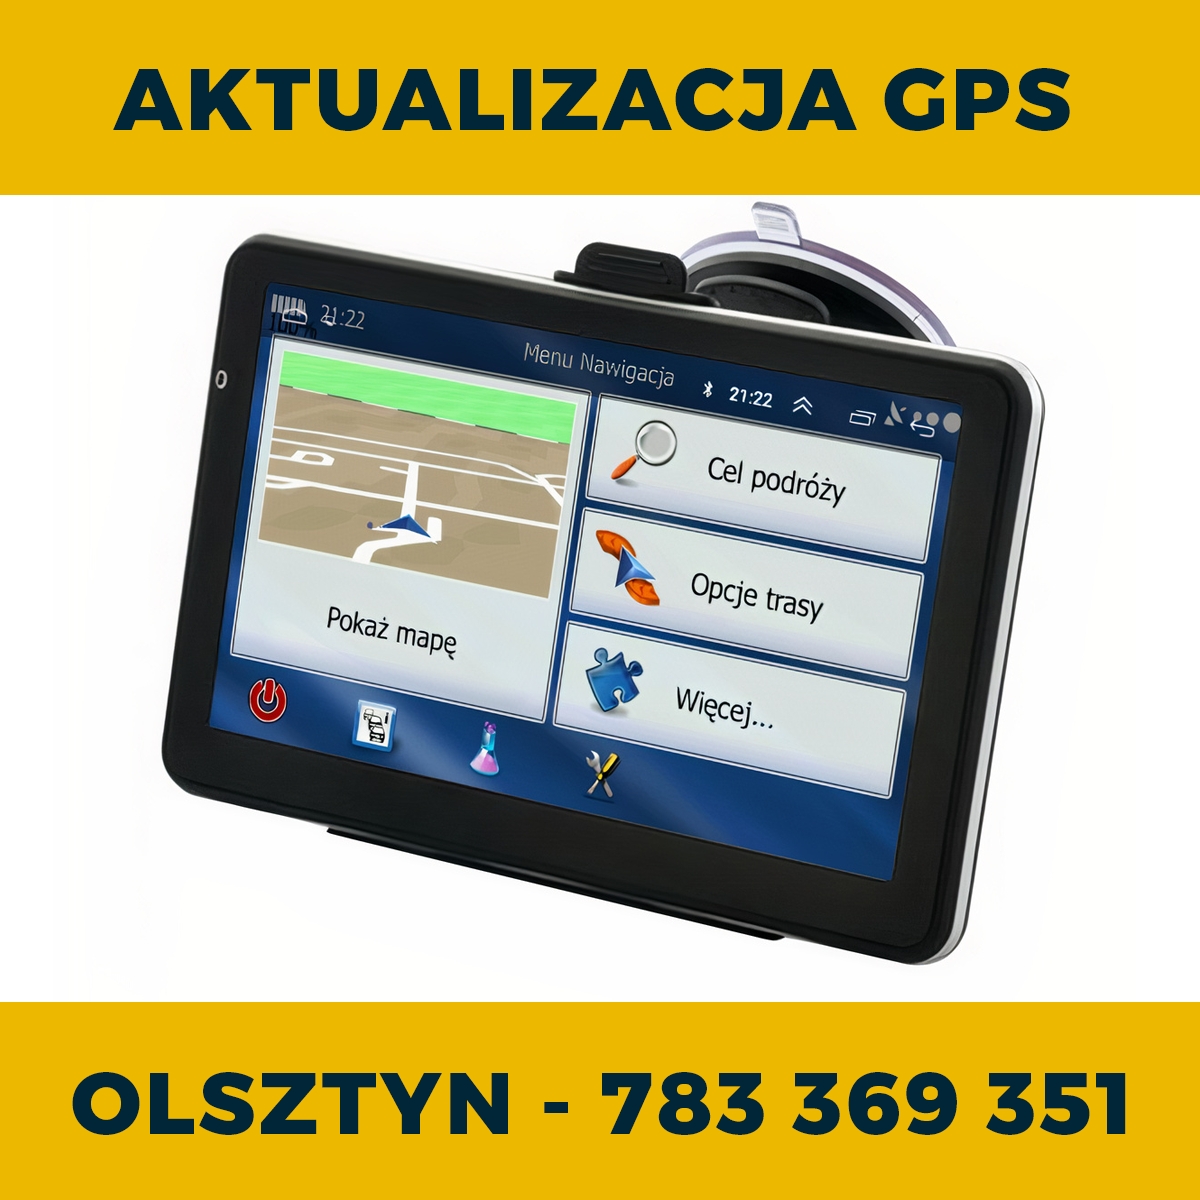 Serwis i aktualizacja nawigacji GPS w Olsztynie | Wgrywanie map TIR